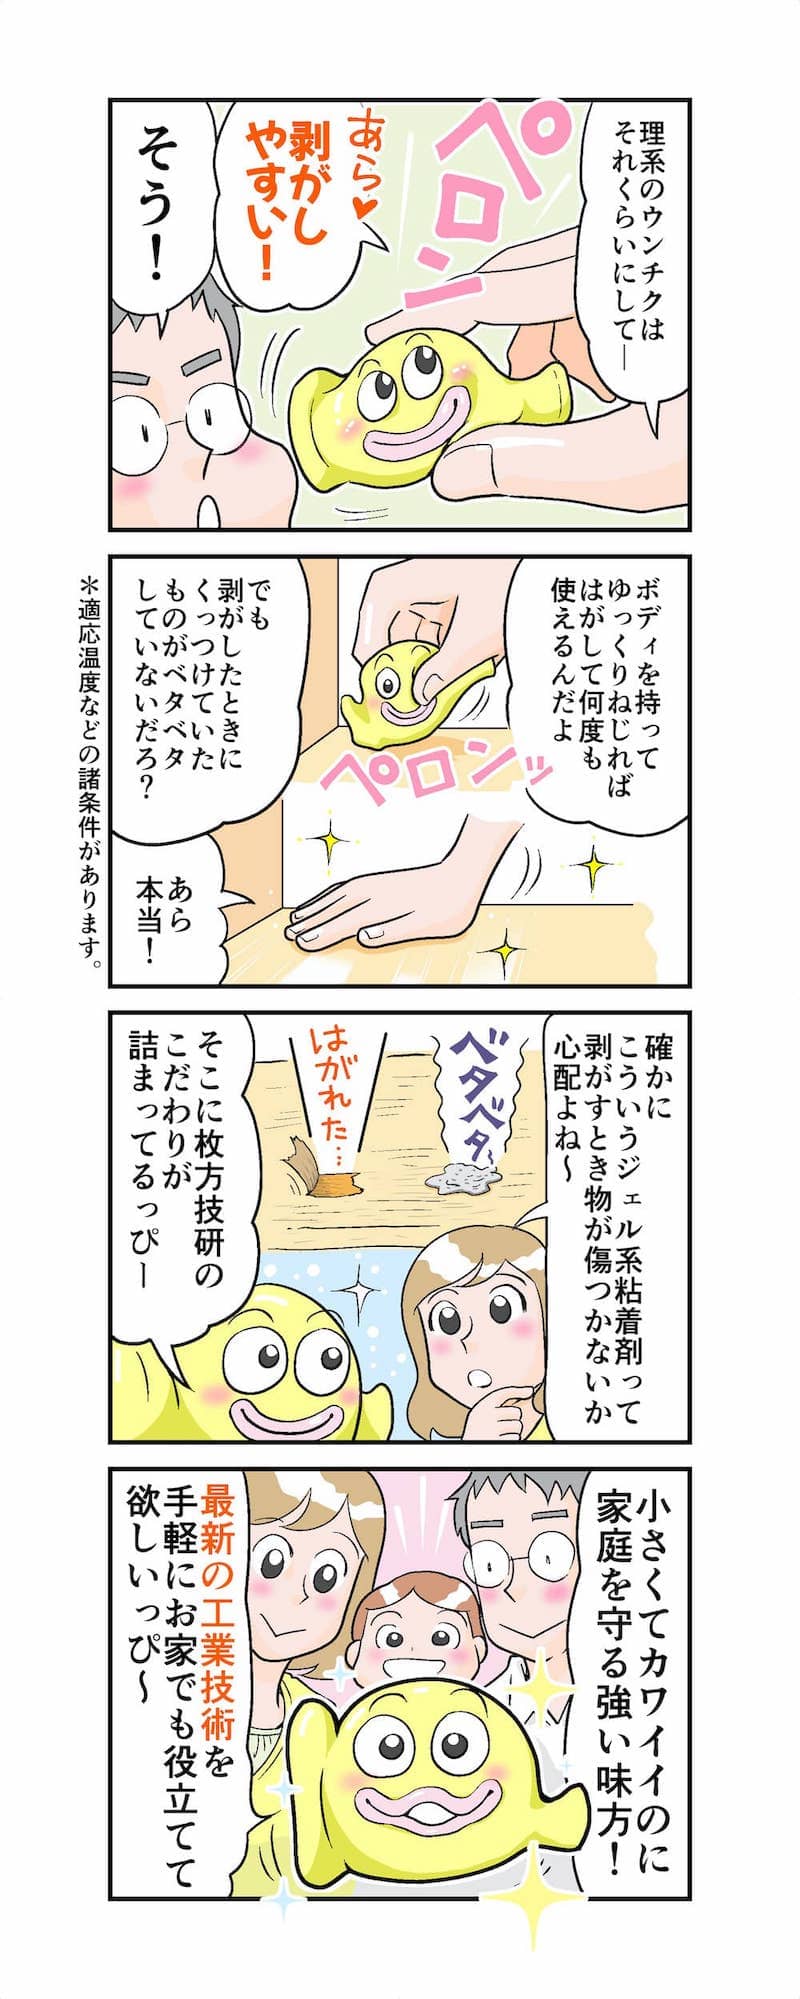 耐震グッズ「地震から家族を守る妖精!?ビタッピー」漫画3枚目